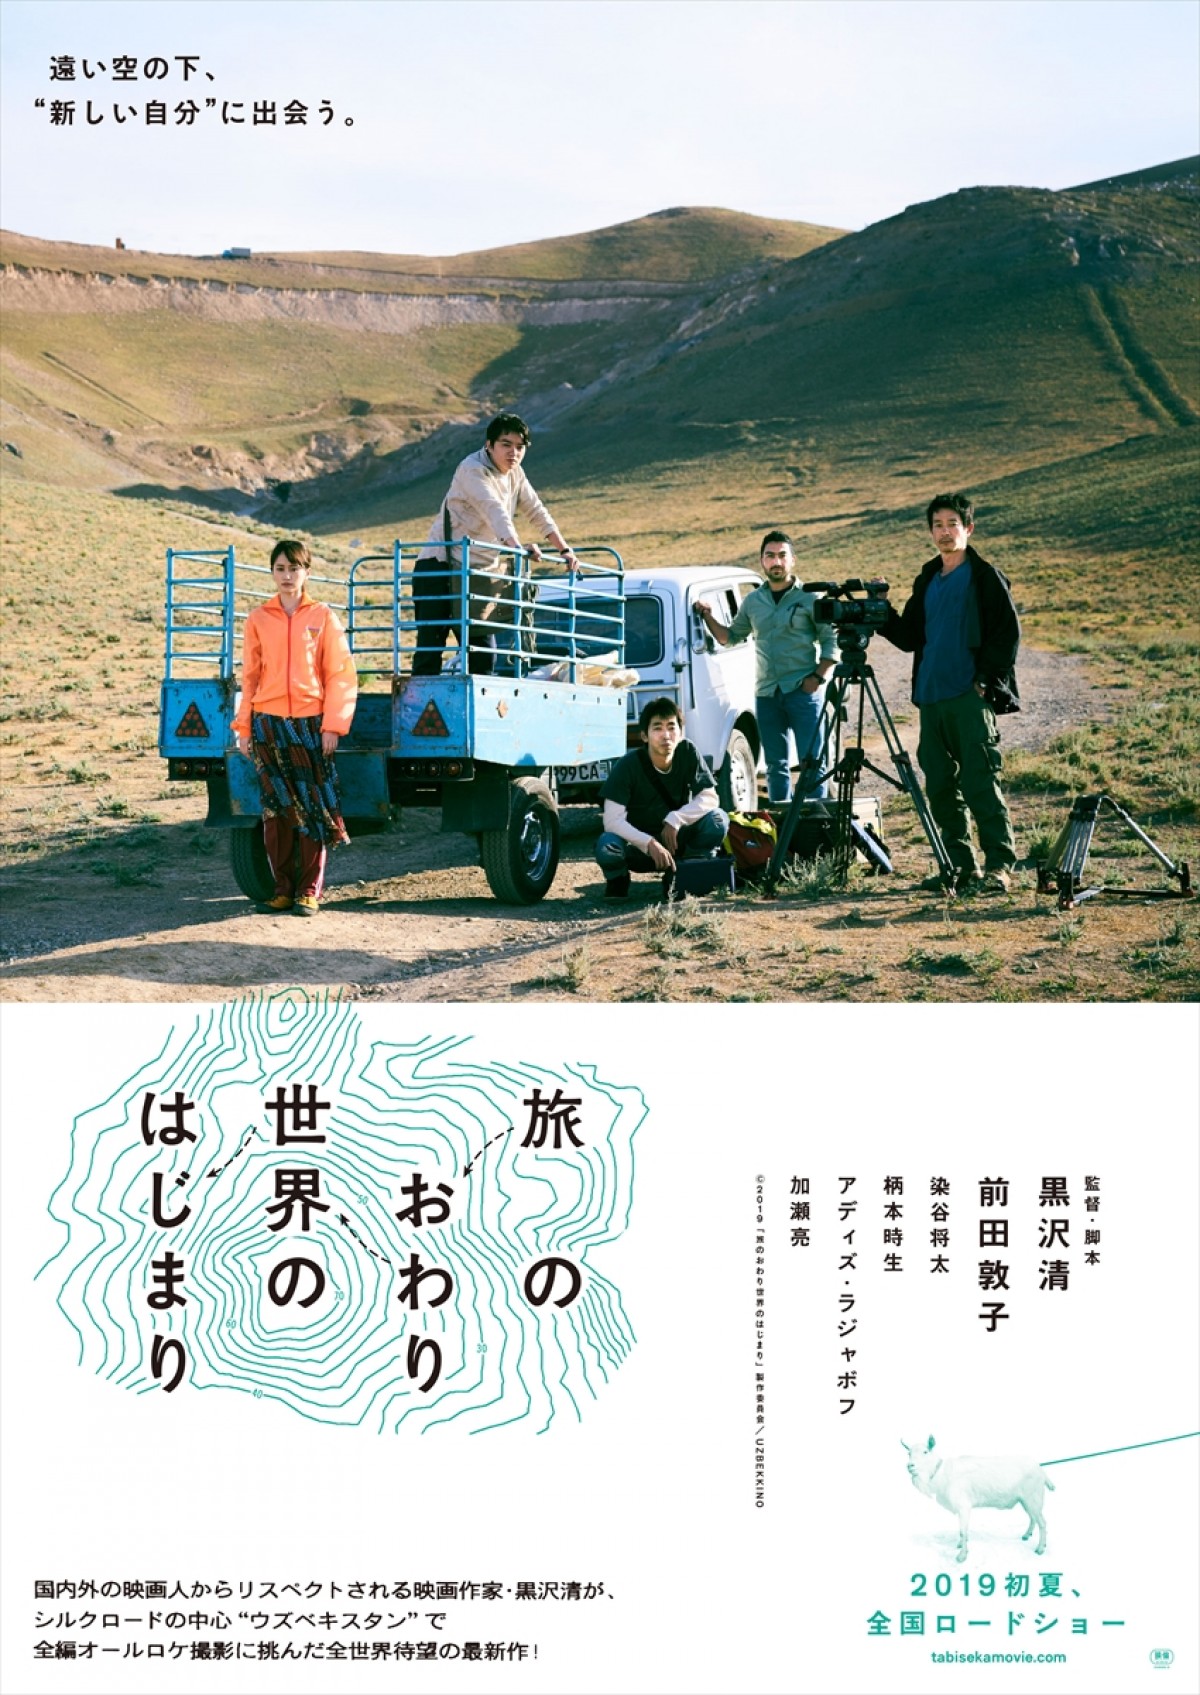 前田敦子、標高2443mでアカペラ撮影『旅のおわり世界のはじまり』 最新予告公開